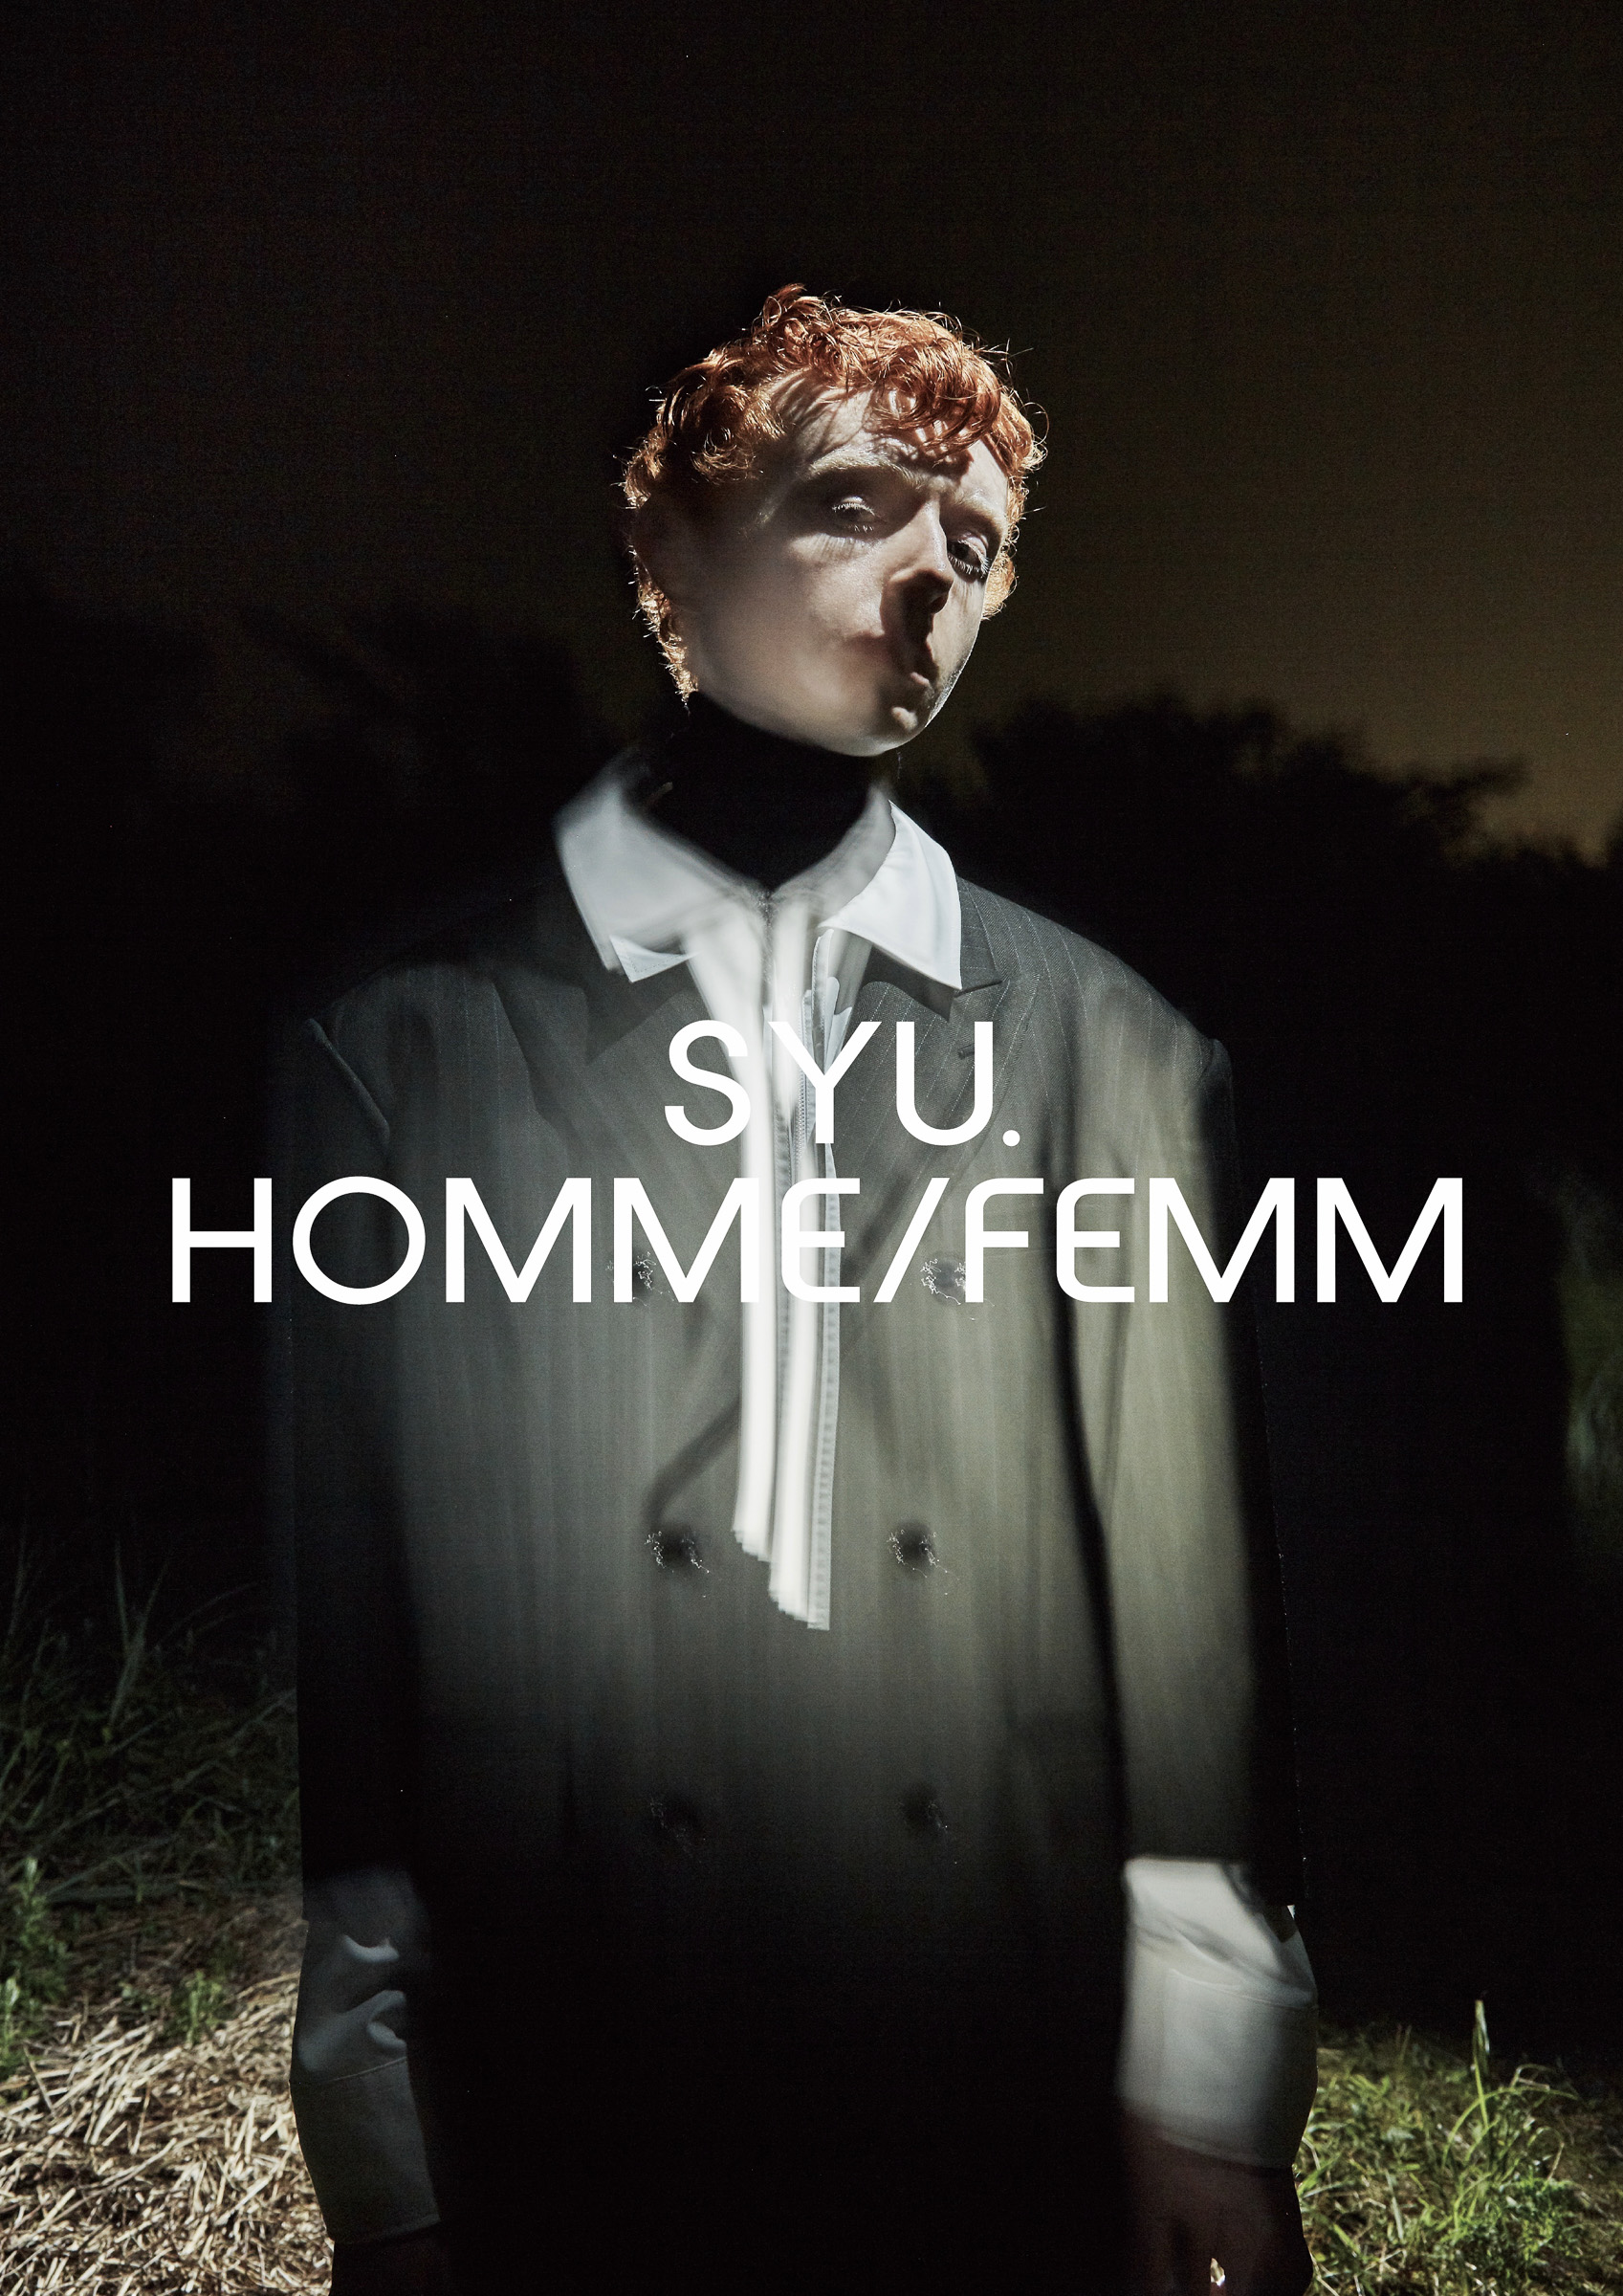 SYU.HOMME/FEMM 2020年春夏 | 画像18枚 - FASHIONSNAP